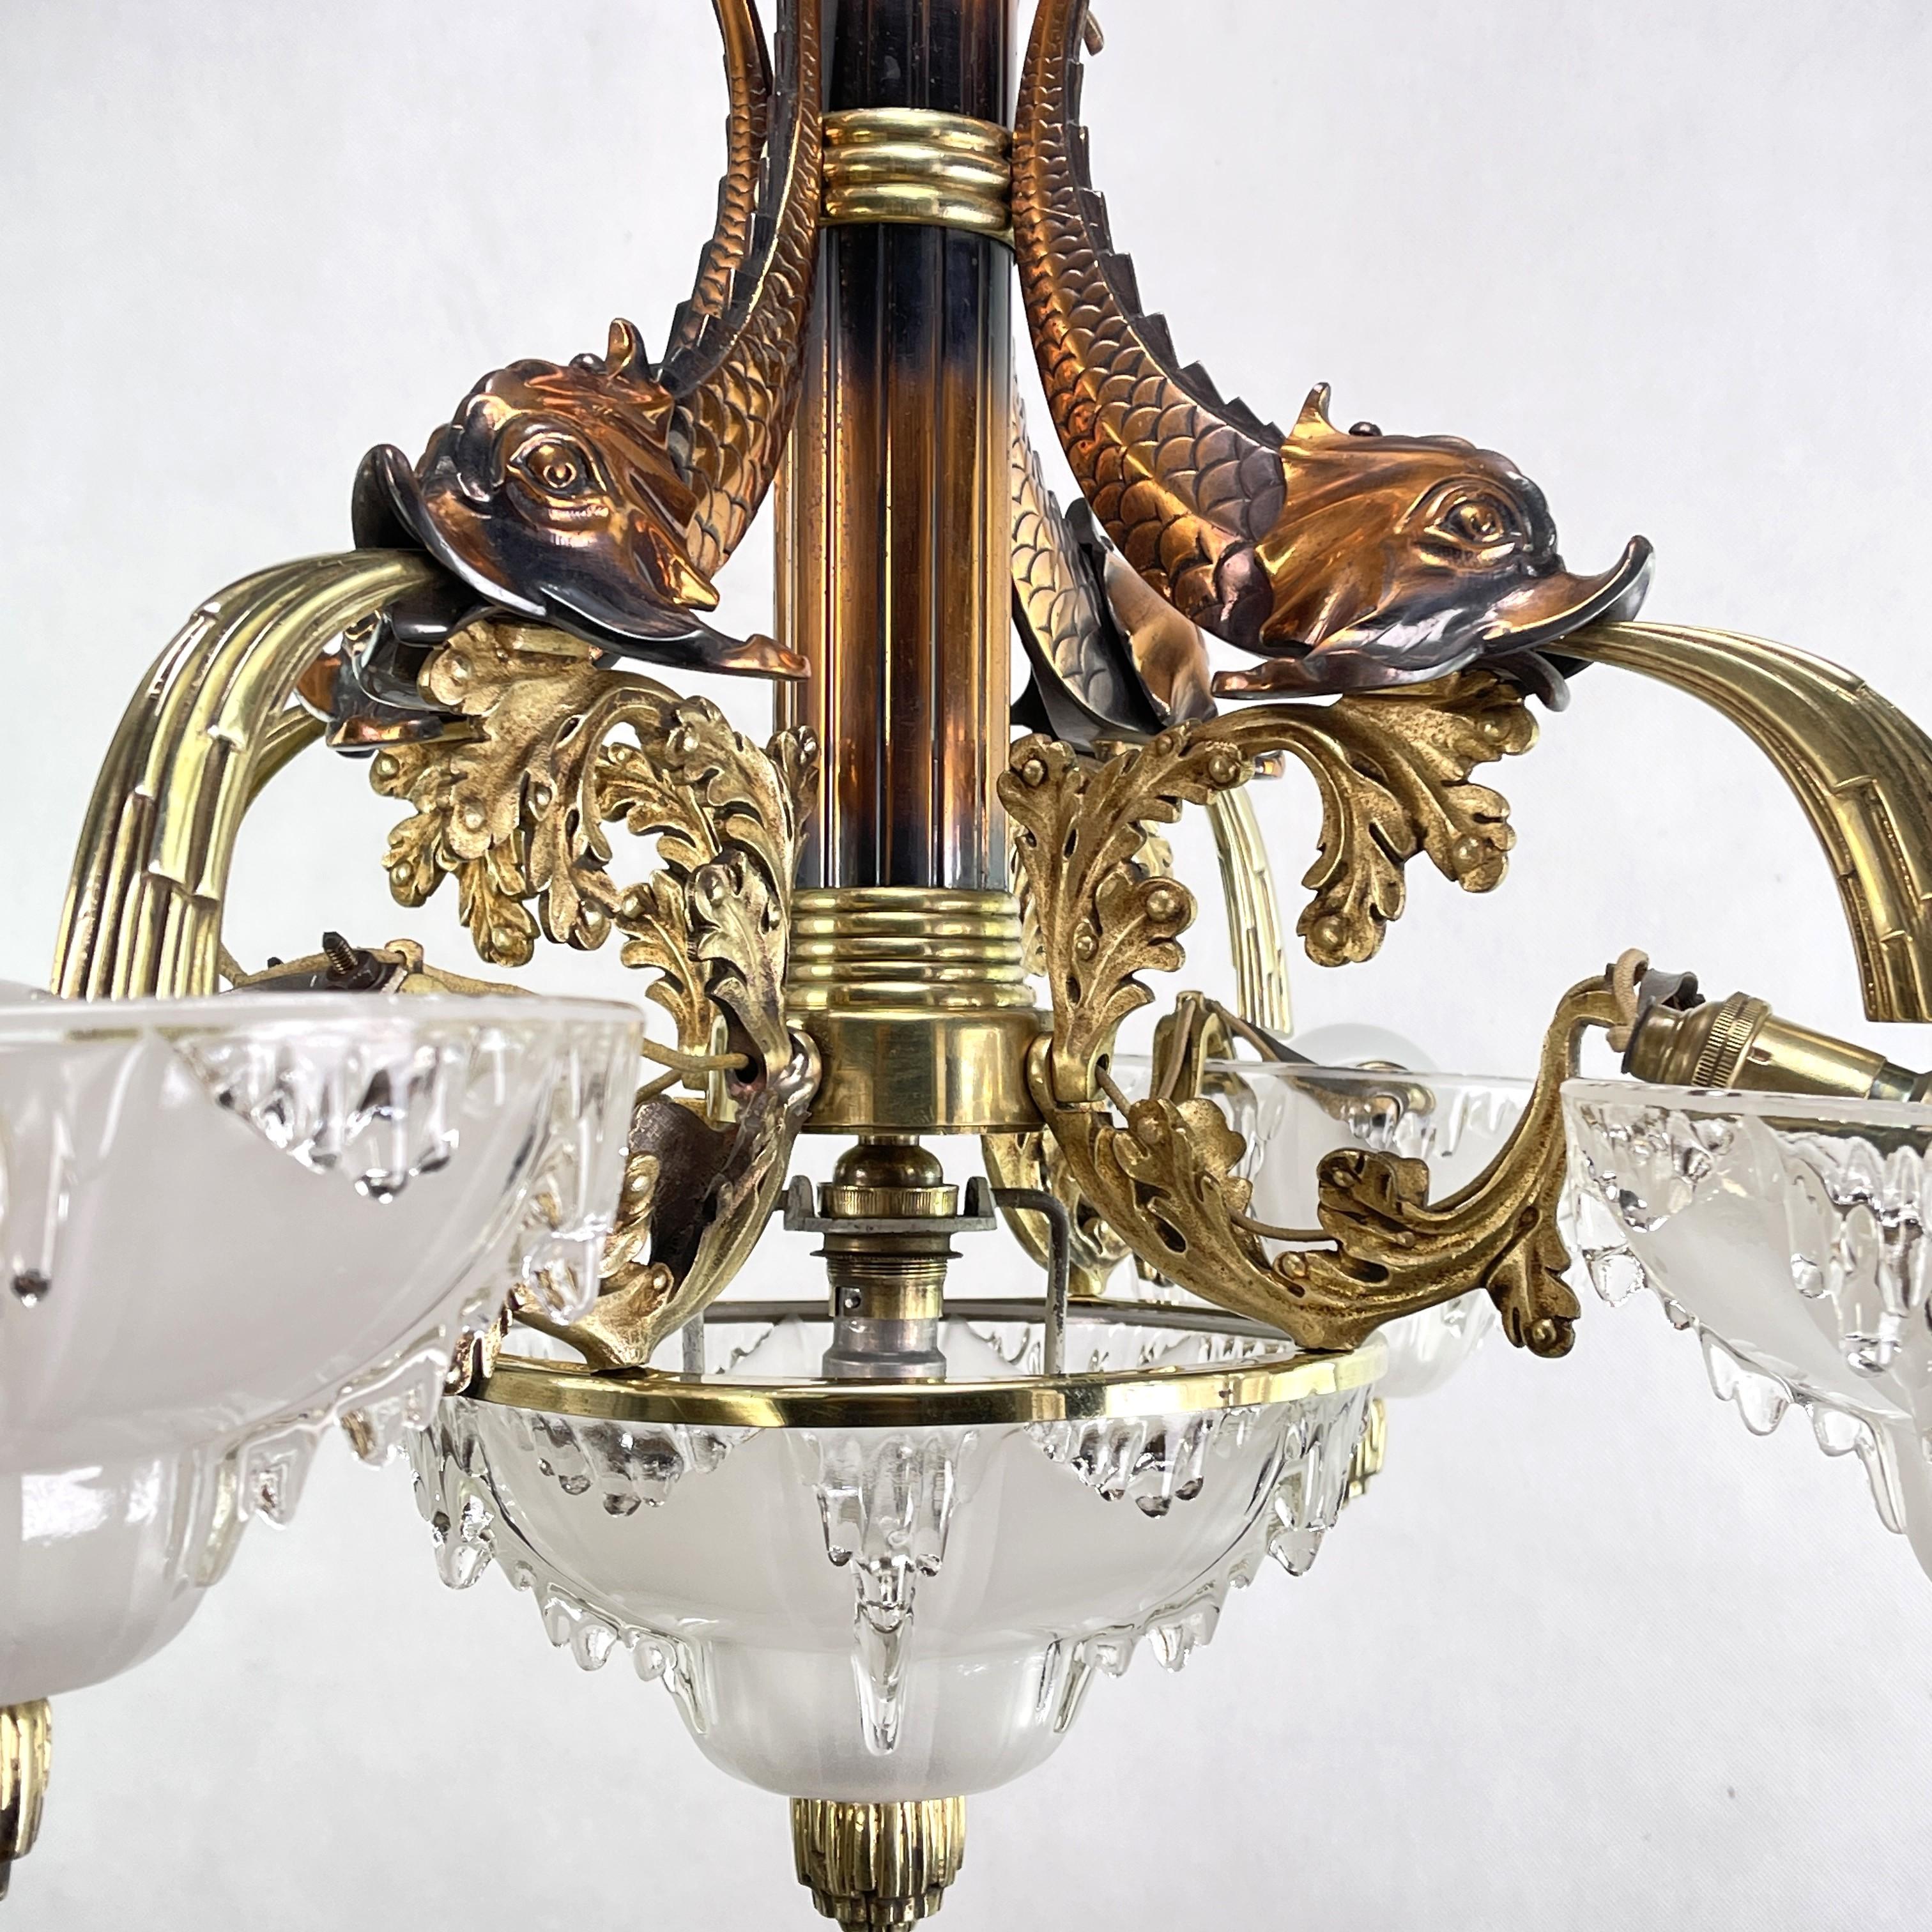 Cette suspension originale de PETITOT impressionne par son design Art déco. La lampe est signée M.P. et donne une lumière très agréable. Elle est composée de cinq abat-jour en verre épais et de quatre poissons en bronze qui jettent de l'eau.

Ce